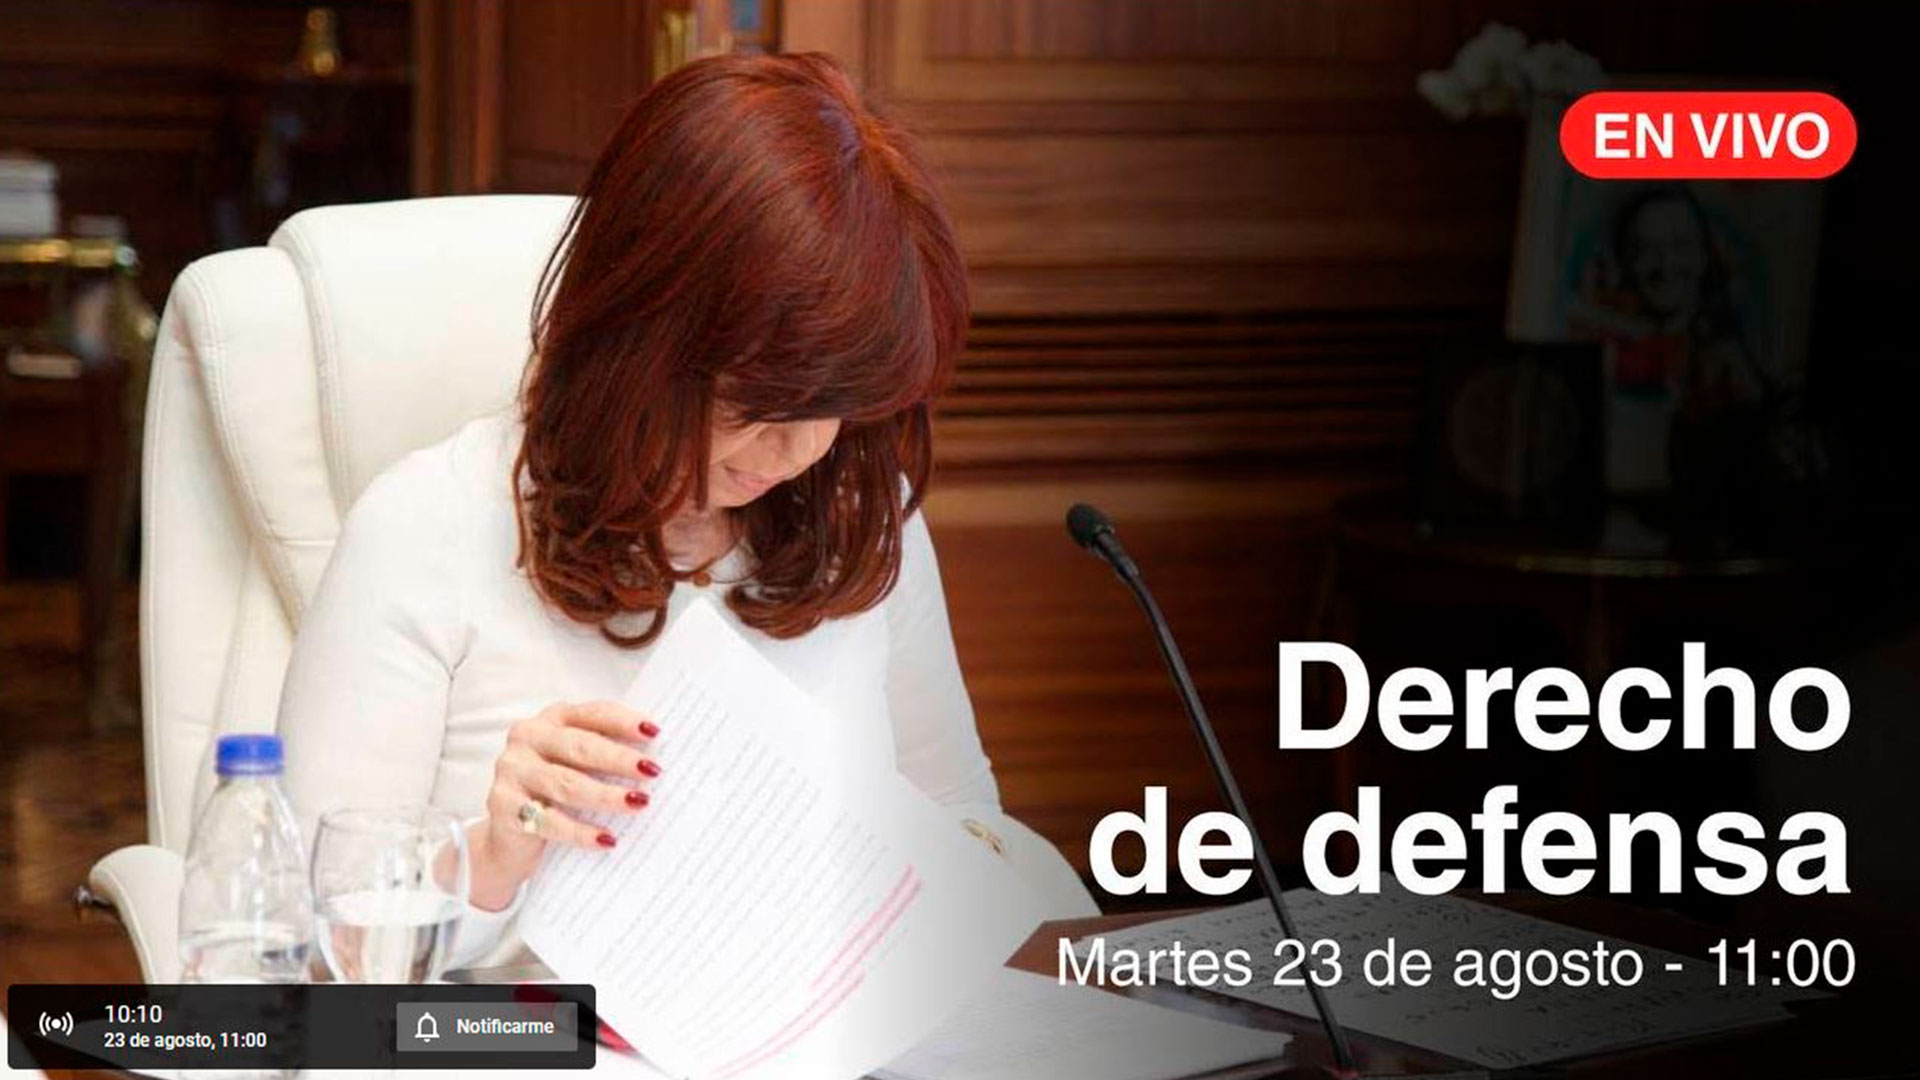 "Derecho de defensa": el título elegido por Cristina Kirchner para la transmisión en vivo durante la cual brindará un discurso en rechazo al pedido de prisión del fiscal Luciani. 